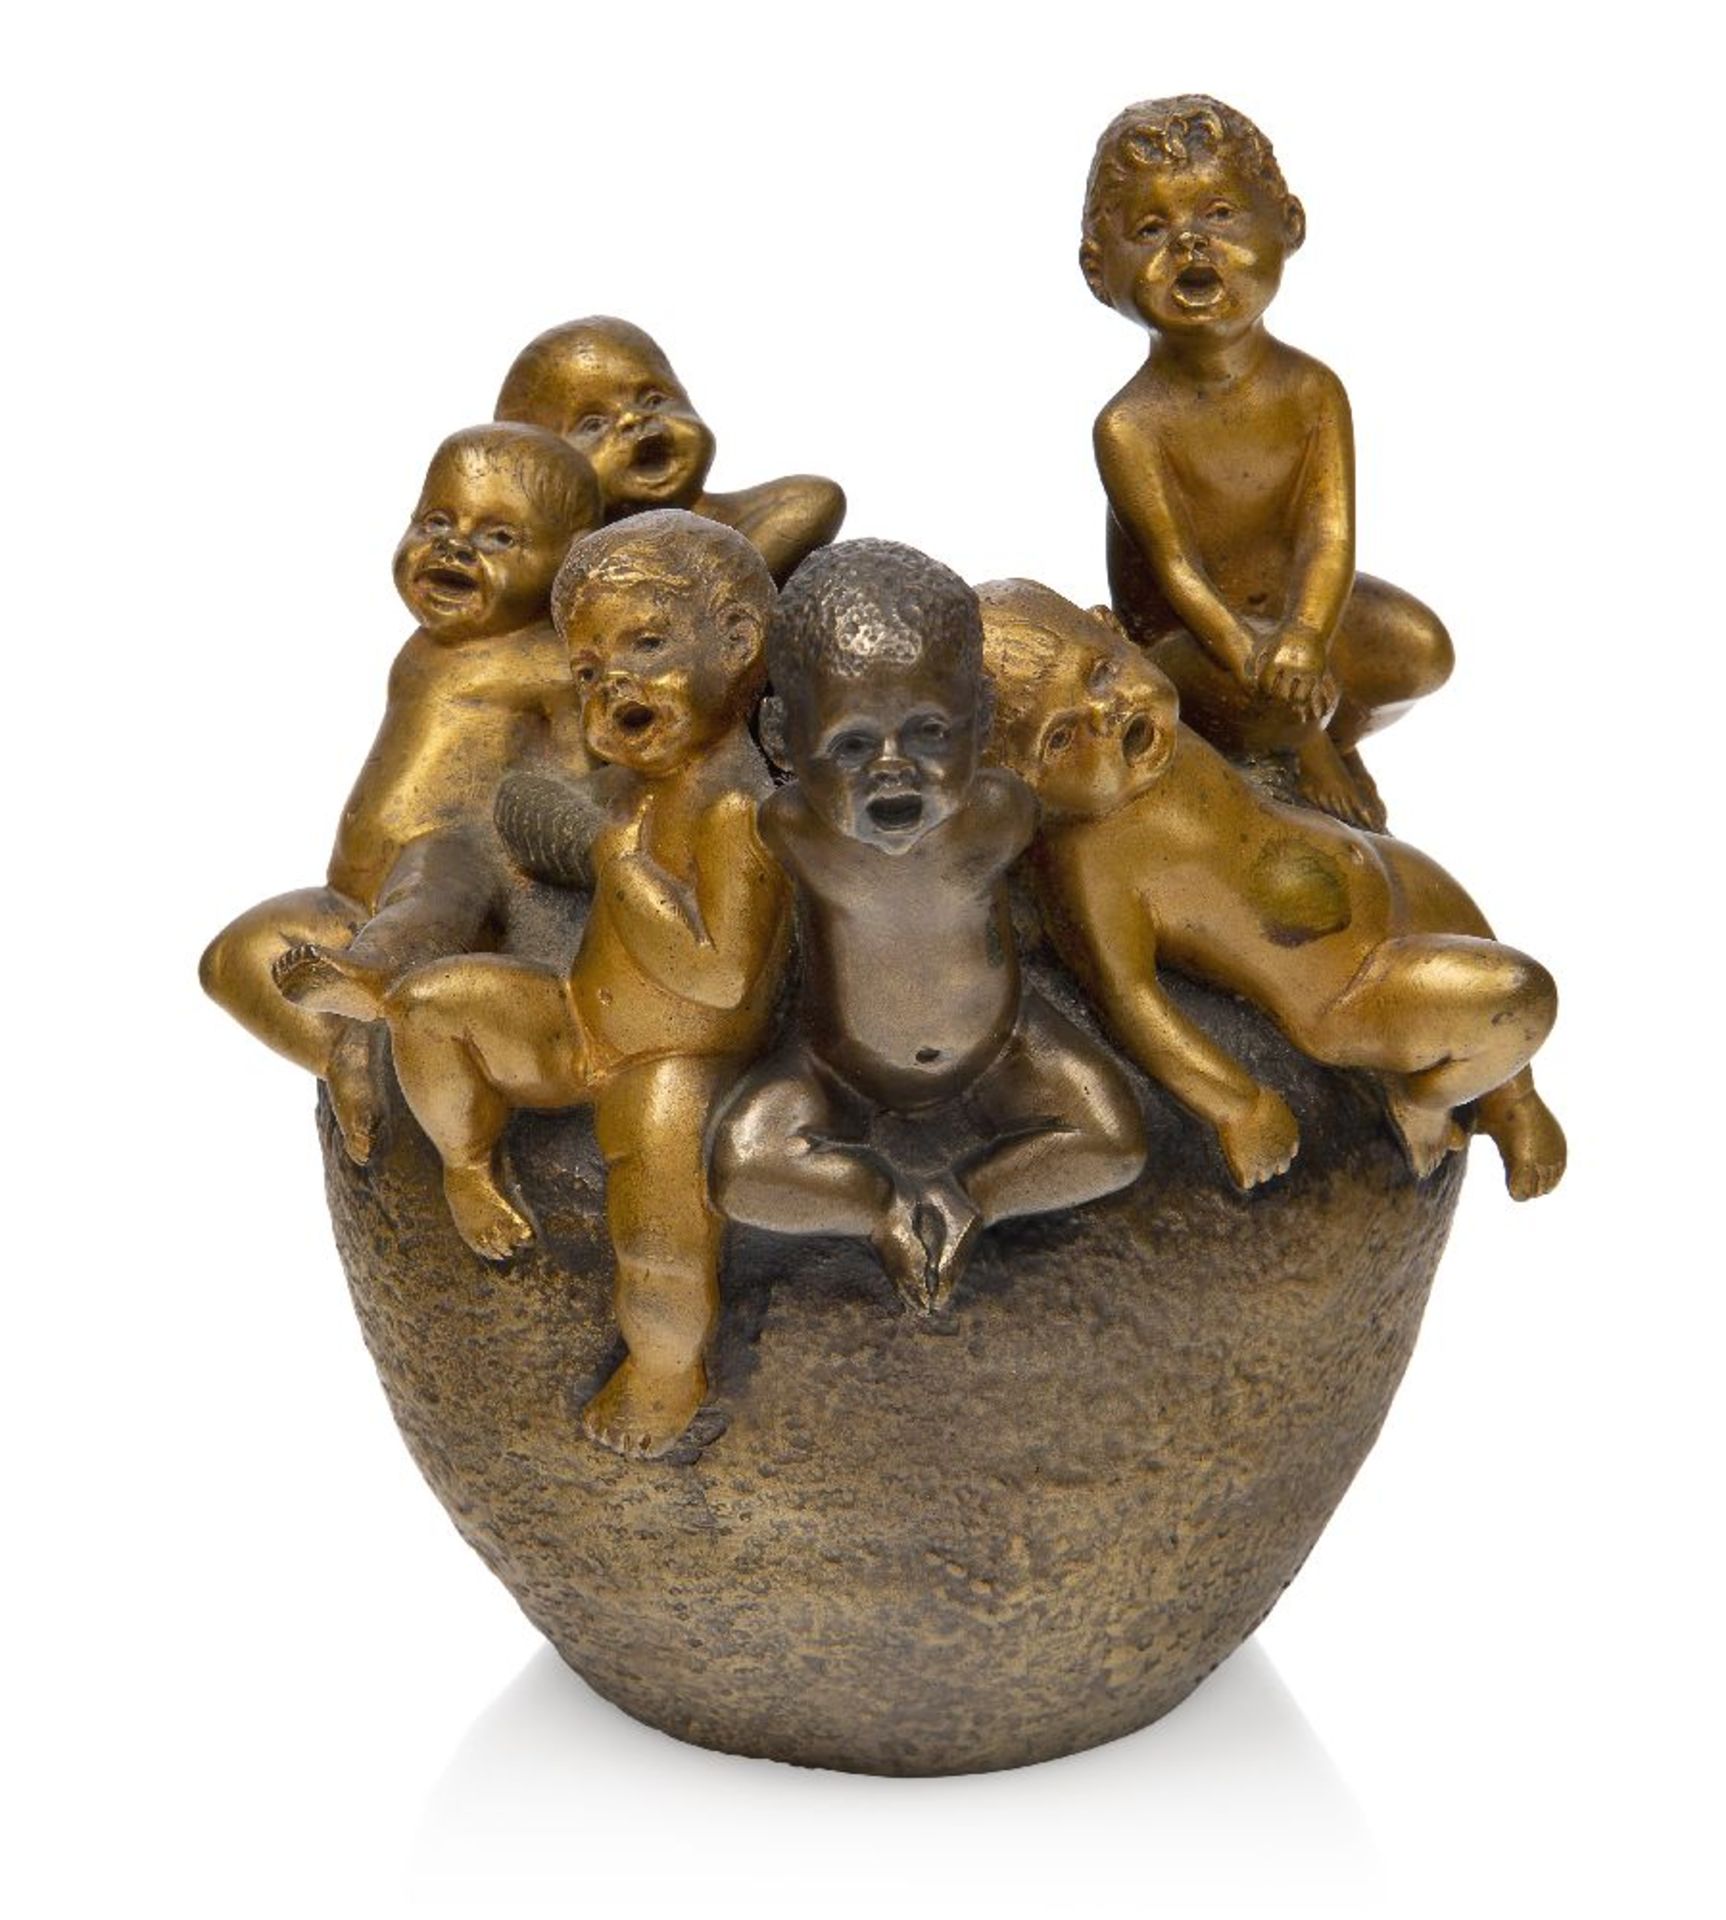 Hans Stotlenberg Lerche (1867-1920), a patinated bronze figural vase ‘Le choeur des enfants’ (The